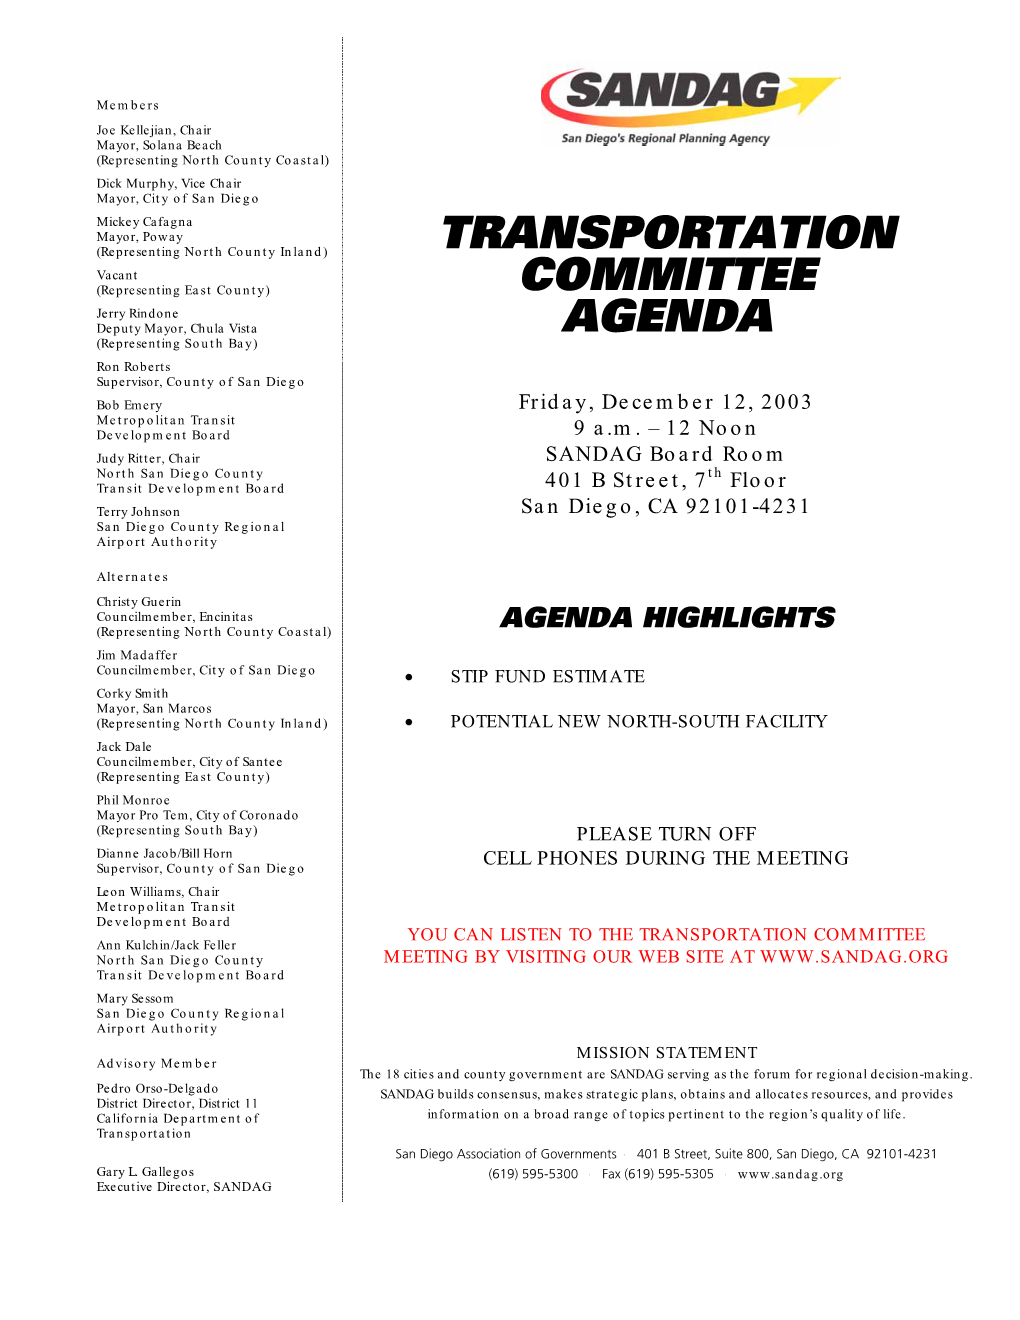 TRANSPORTATION COMMITTEE AGENDA Friday, December 12, 2003